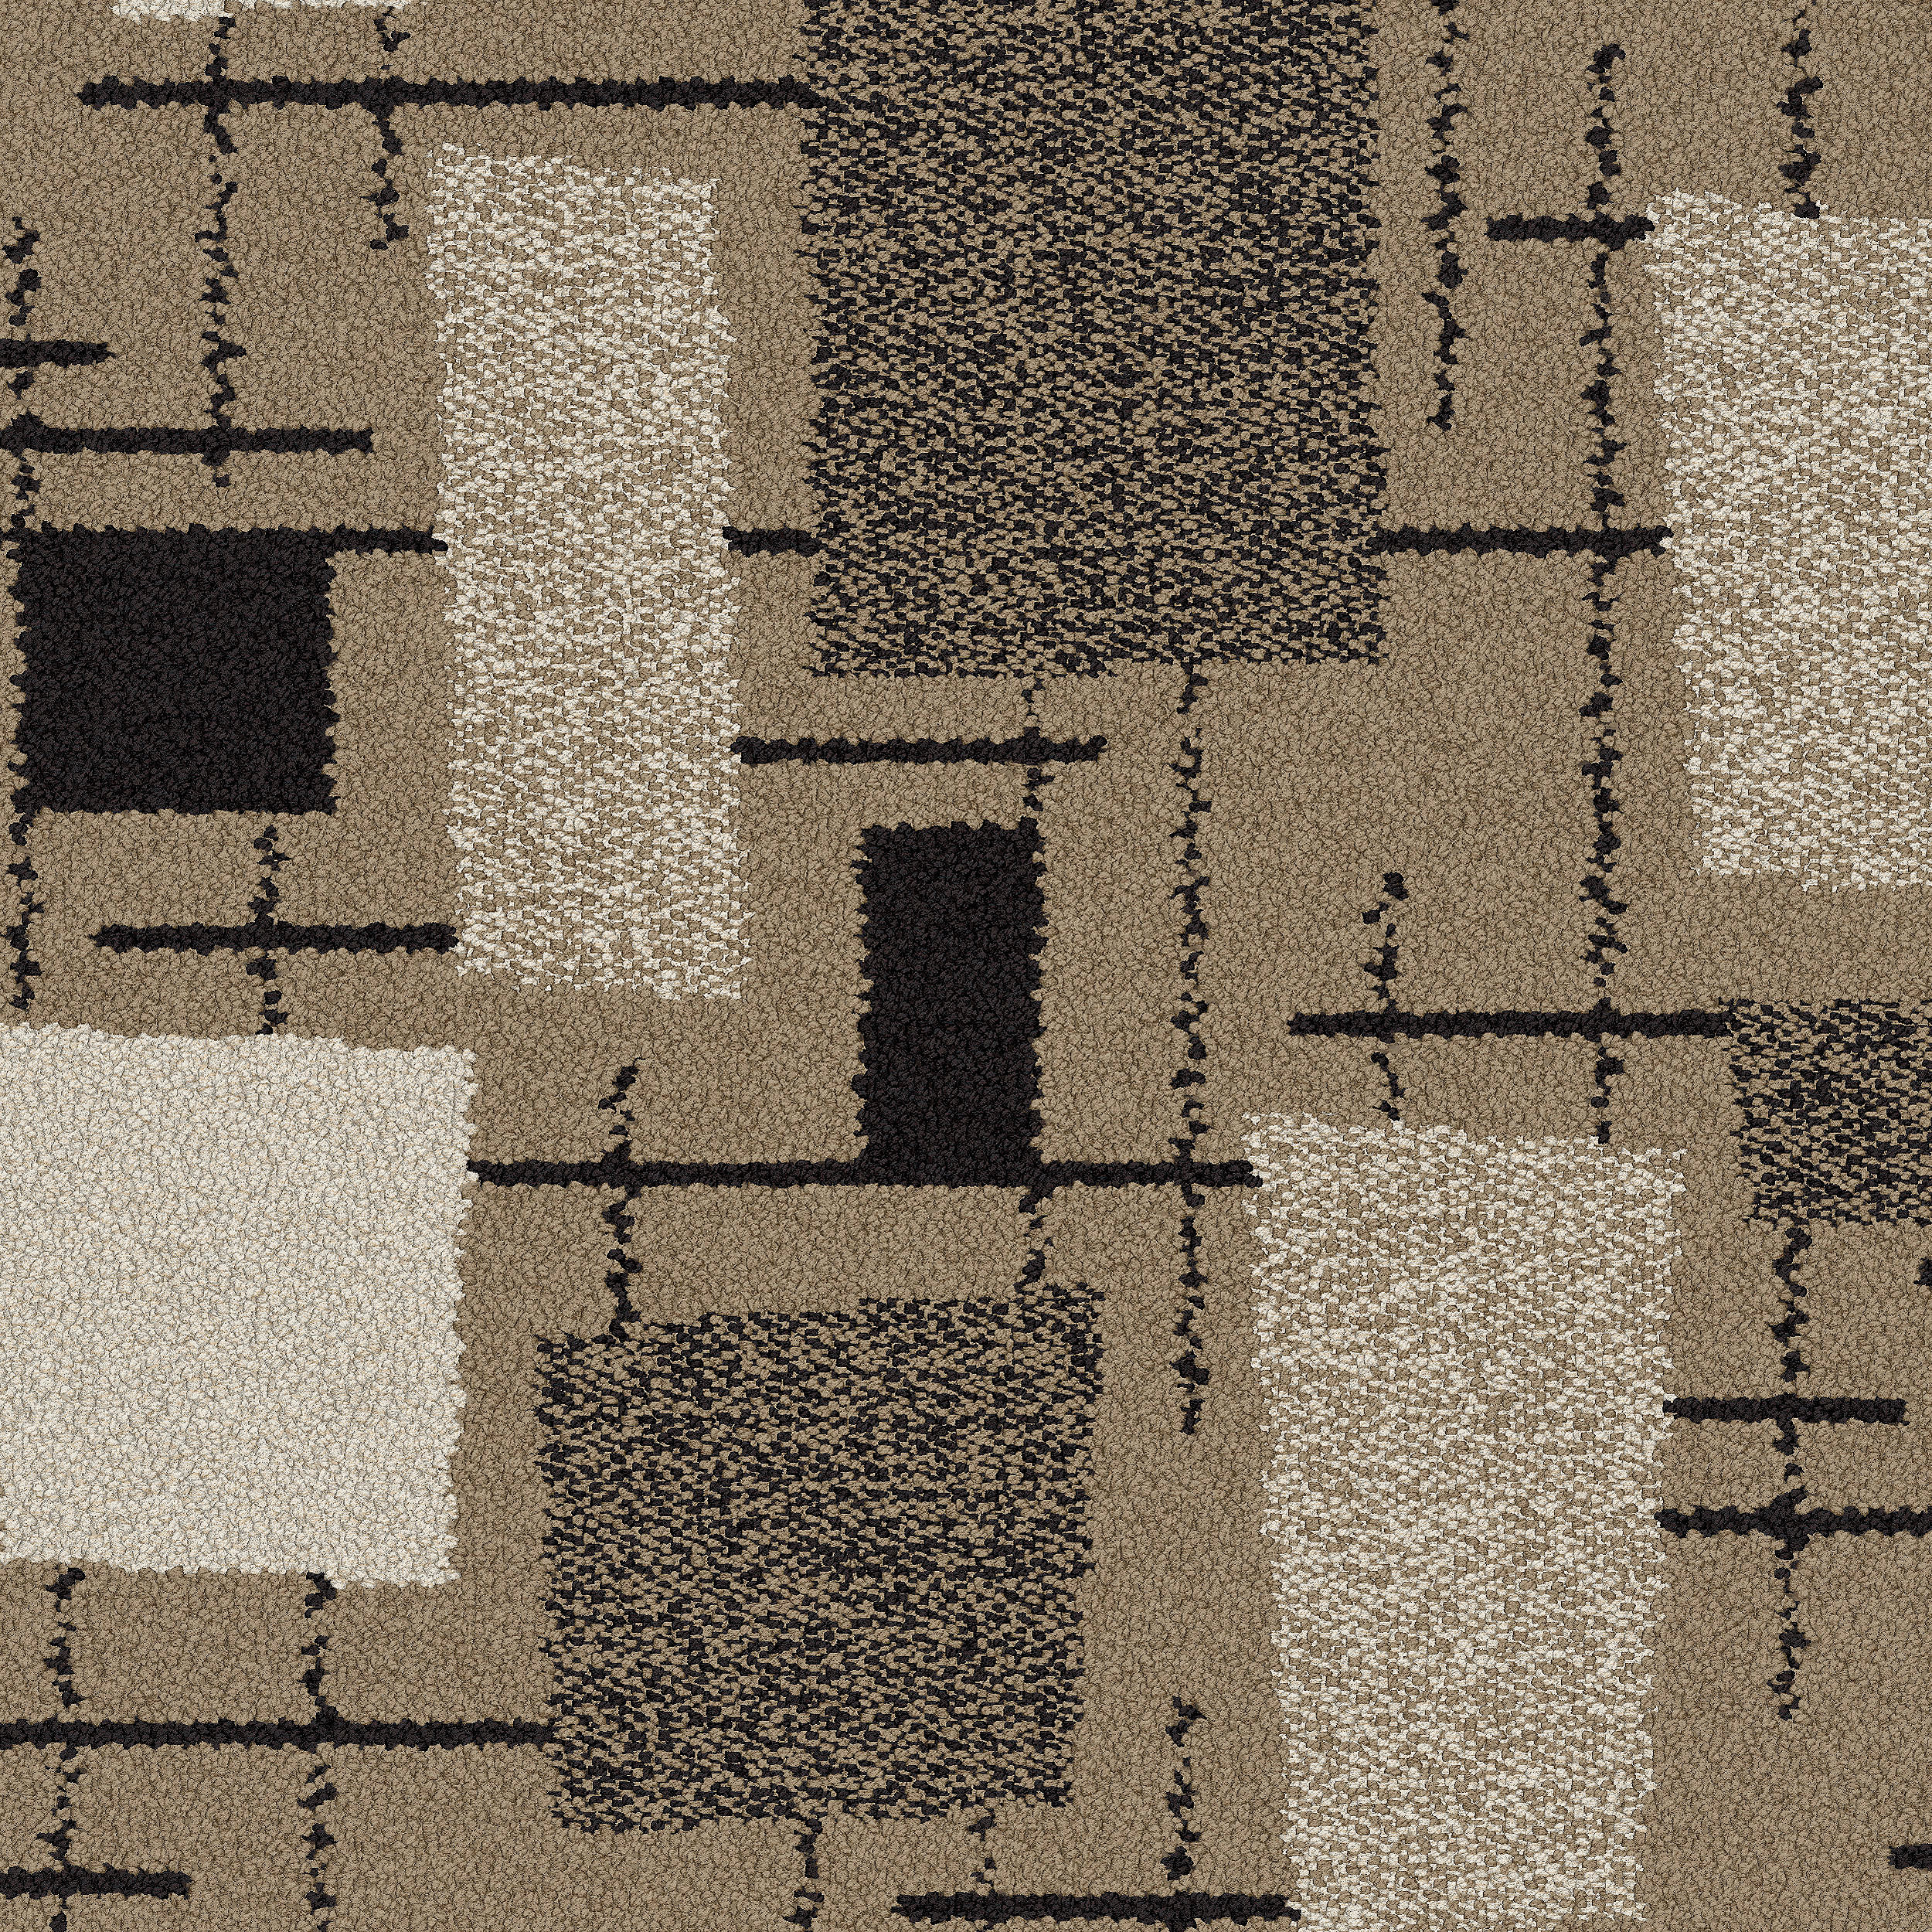 Newstalgia carpet tile in Wheat Bildnummer 6